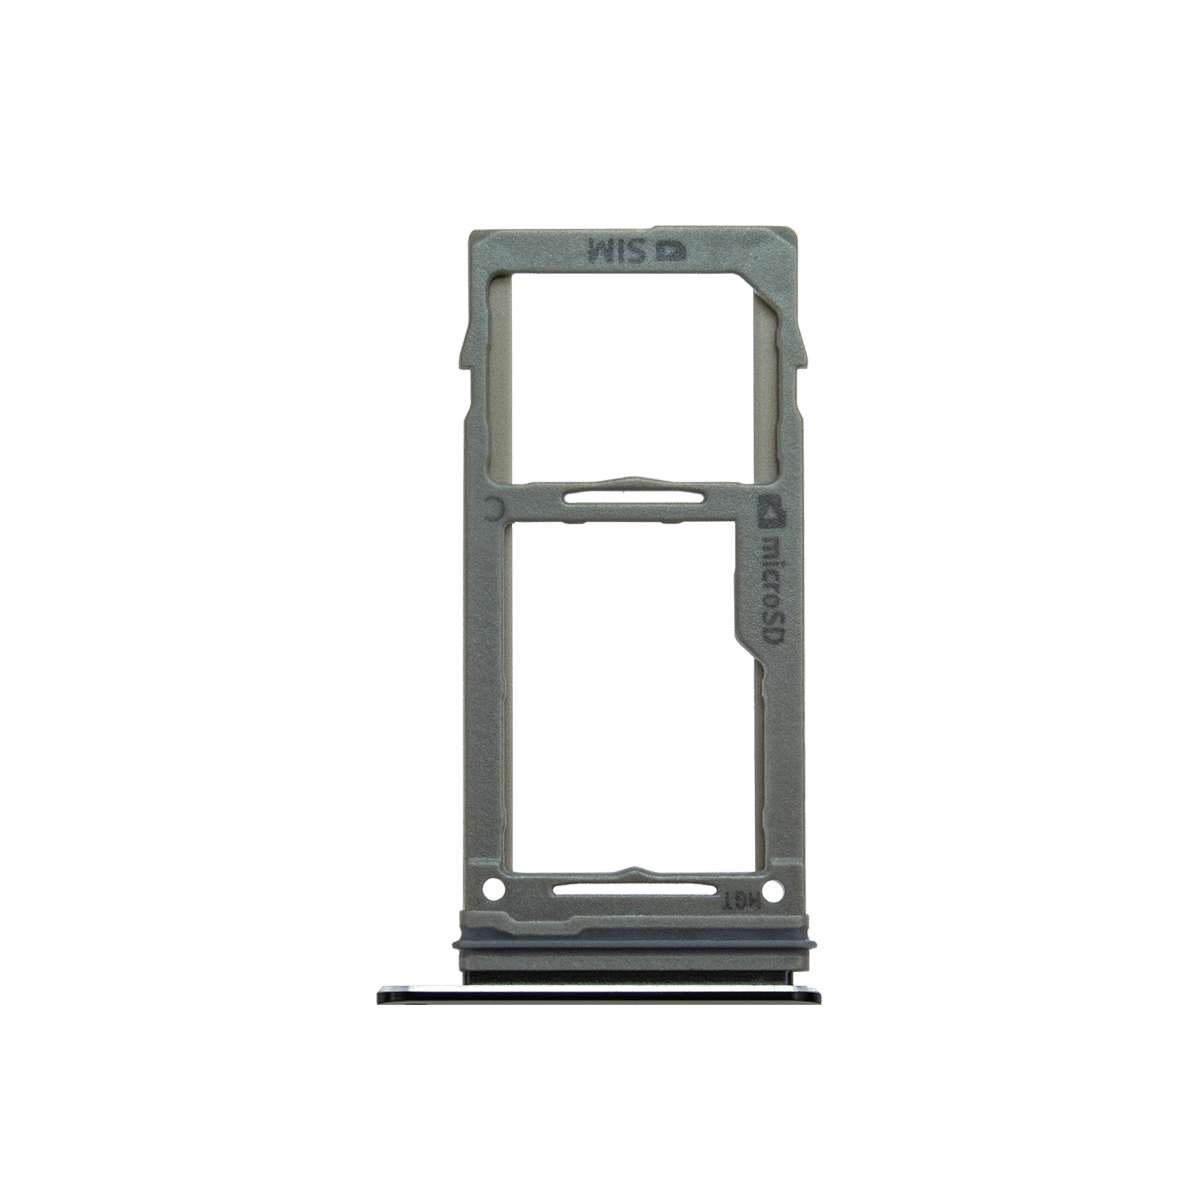 Samsung Galaxy Note 9 Sim Card Tray